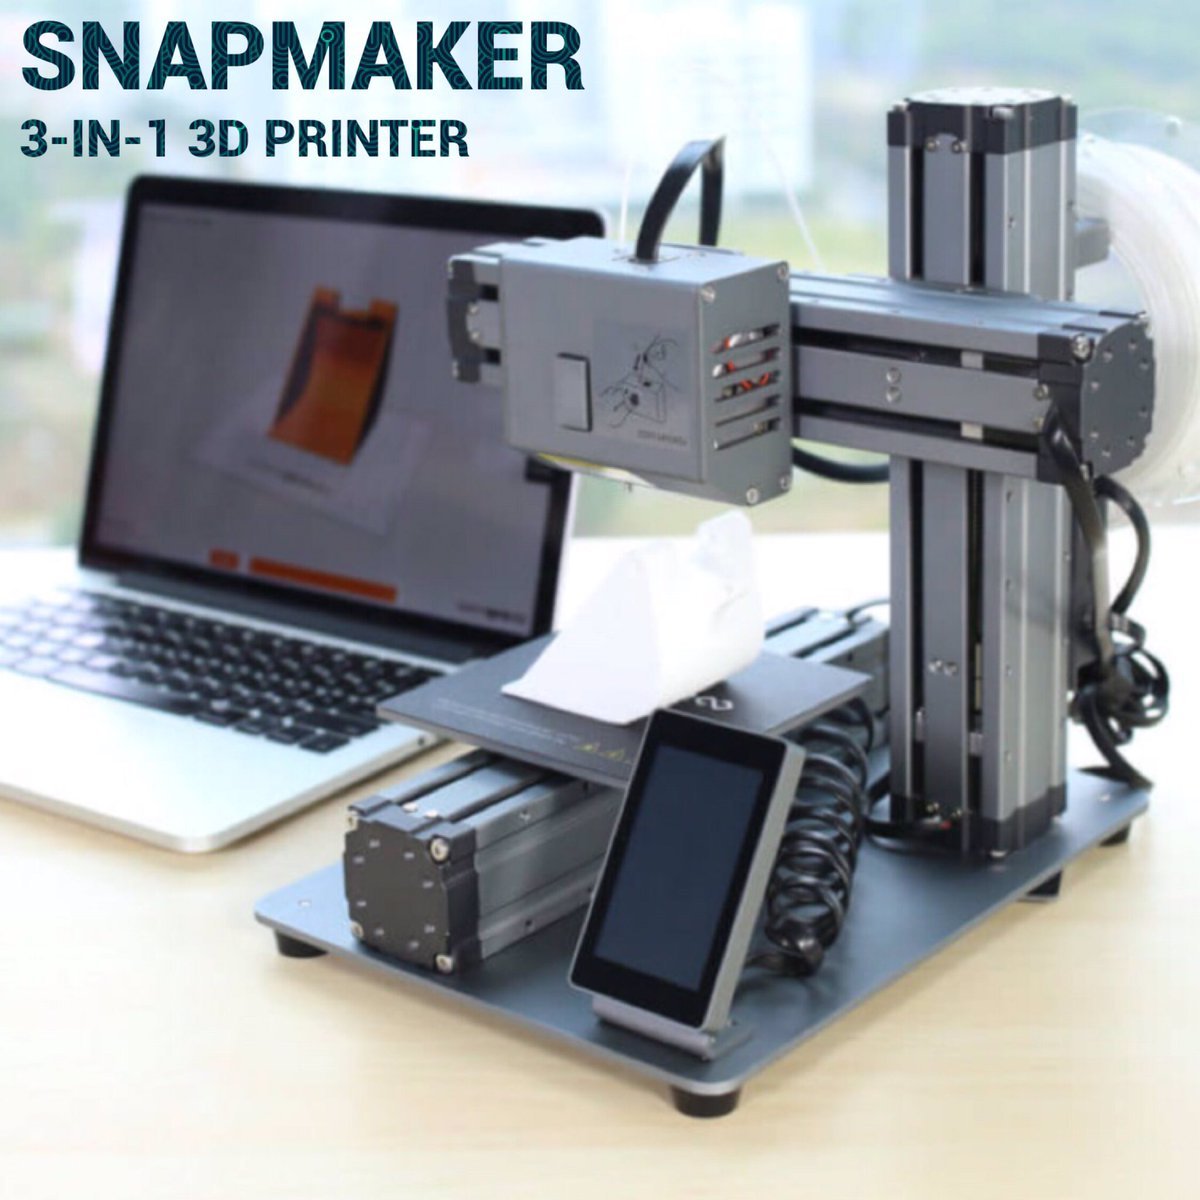  The Snapmaker desktop multifunction 3D printer 